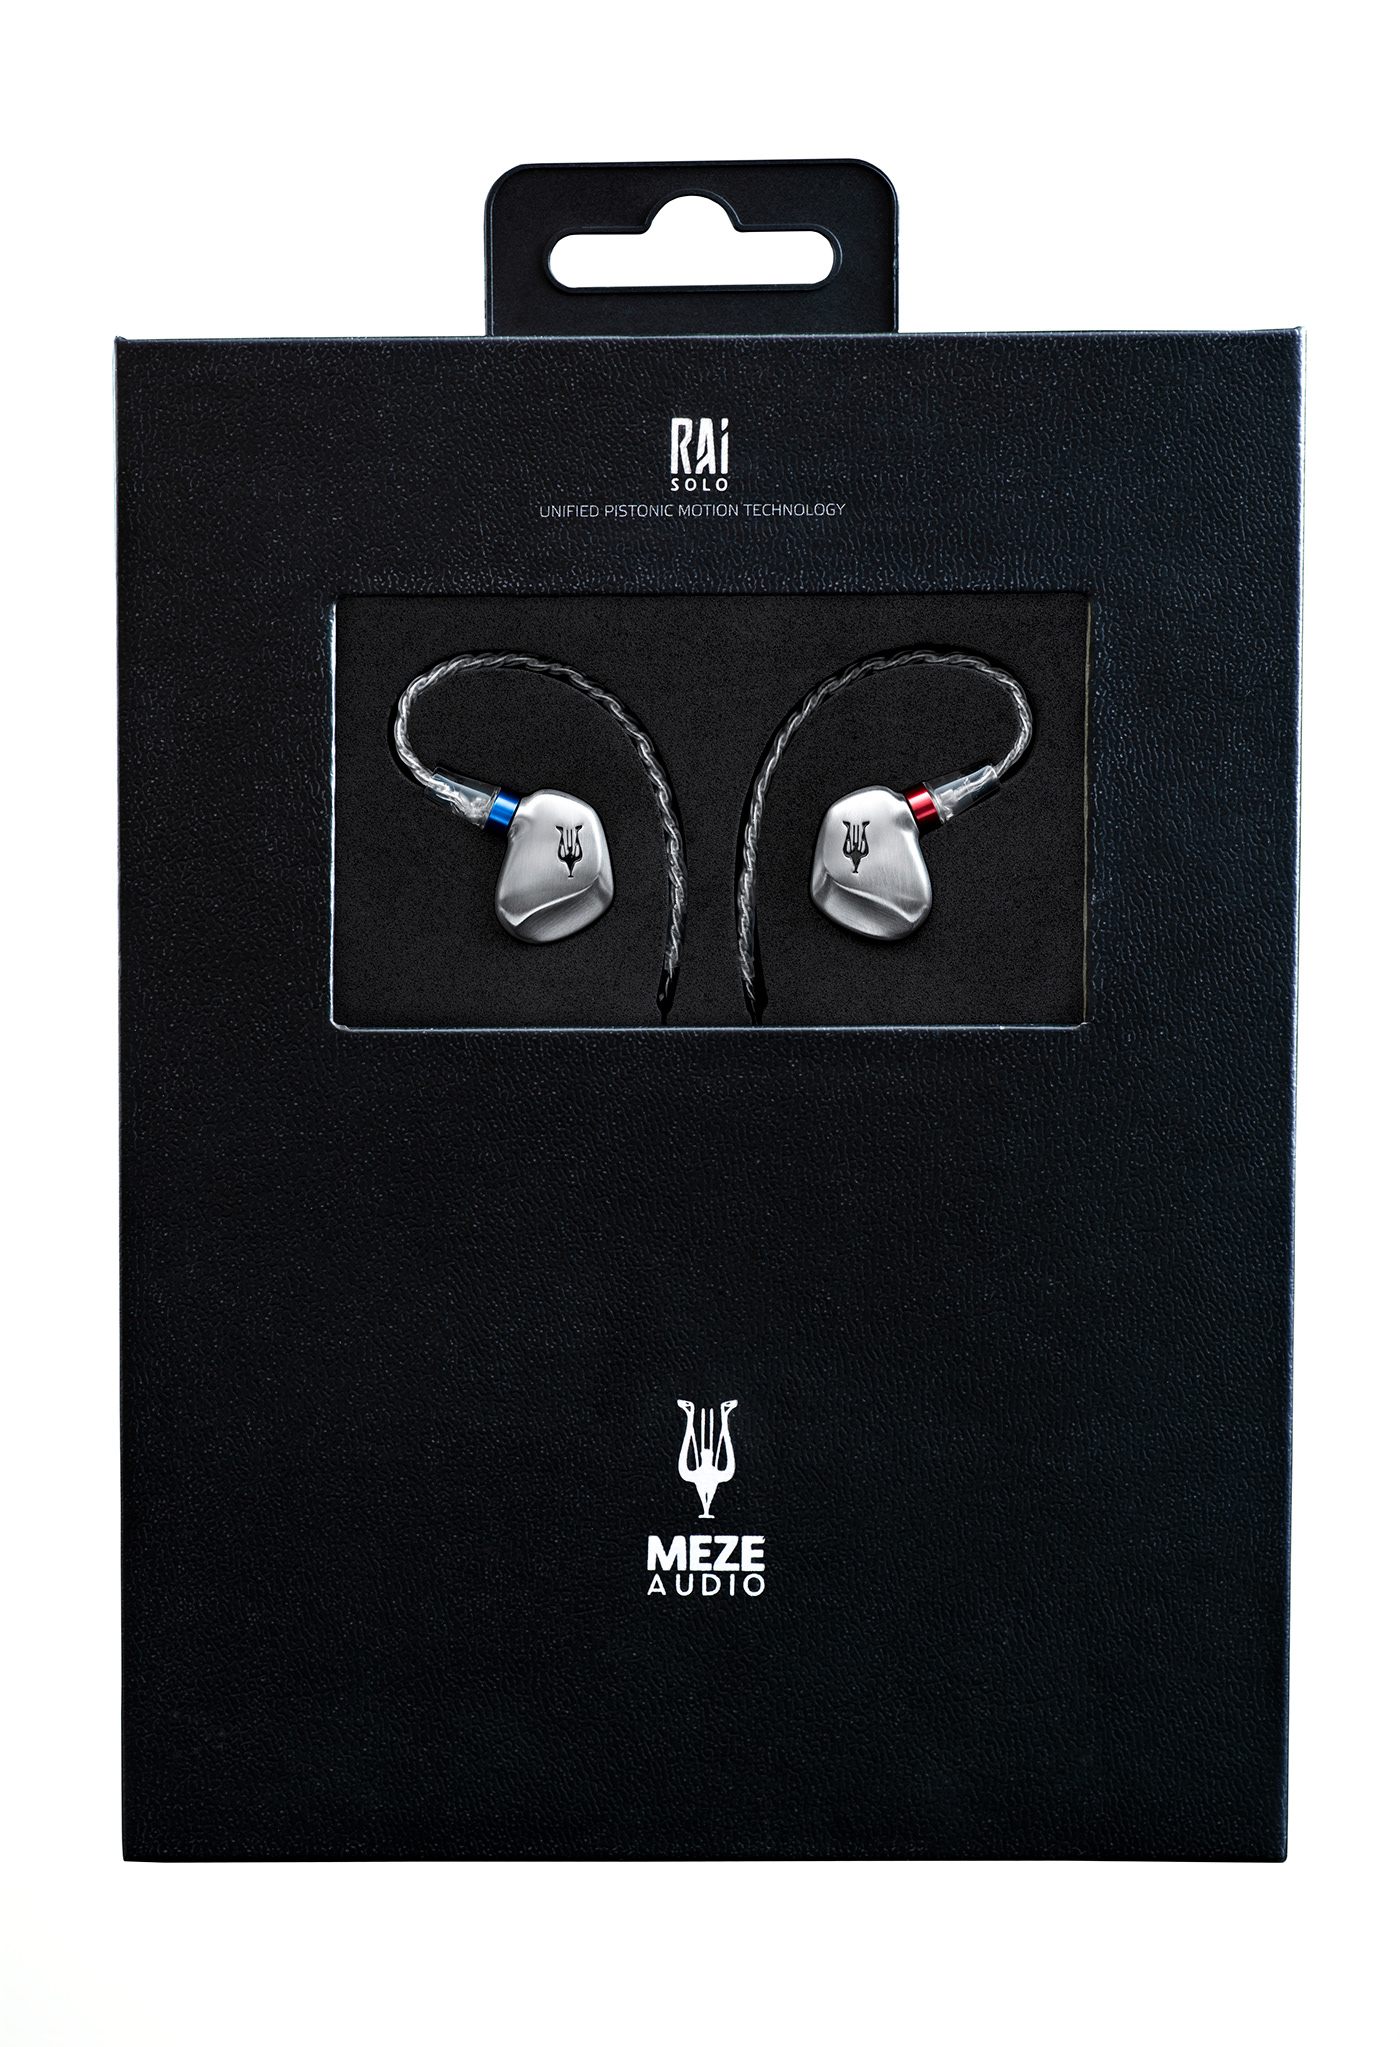 Audio audiophile earphones headphones IEM metalinjectionmoulding meze music